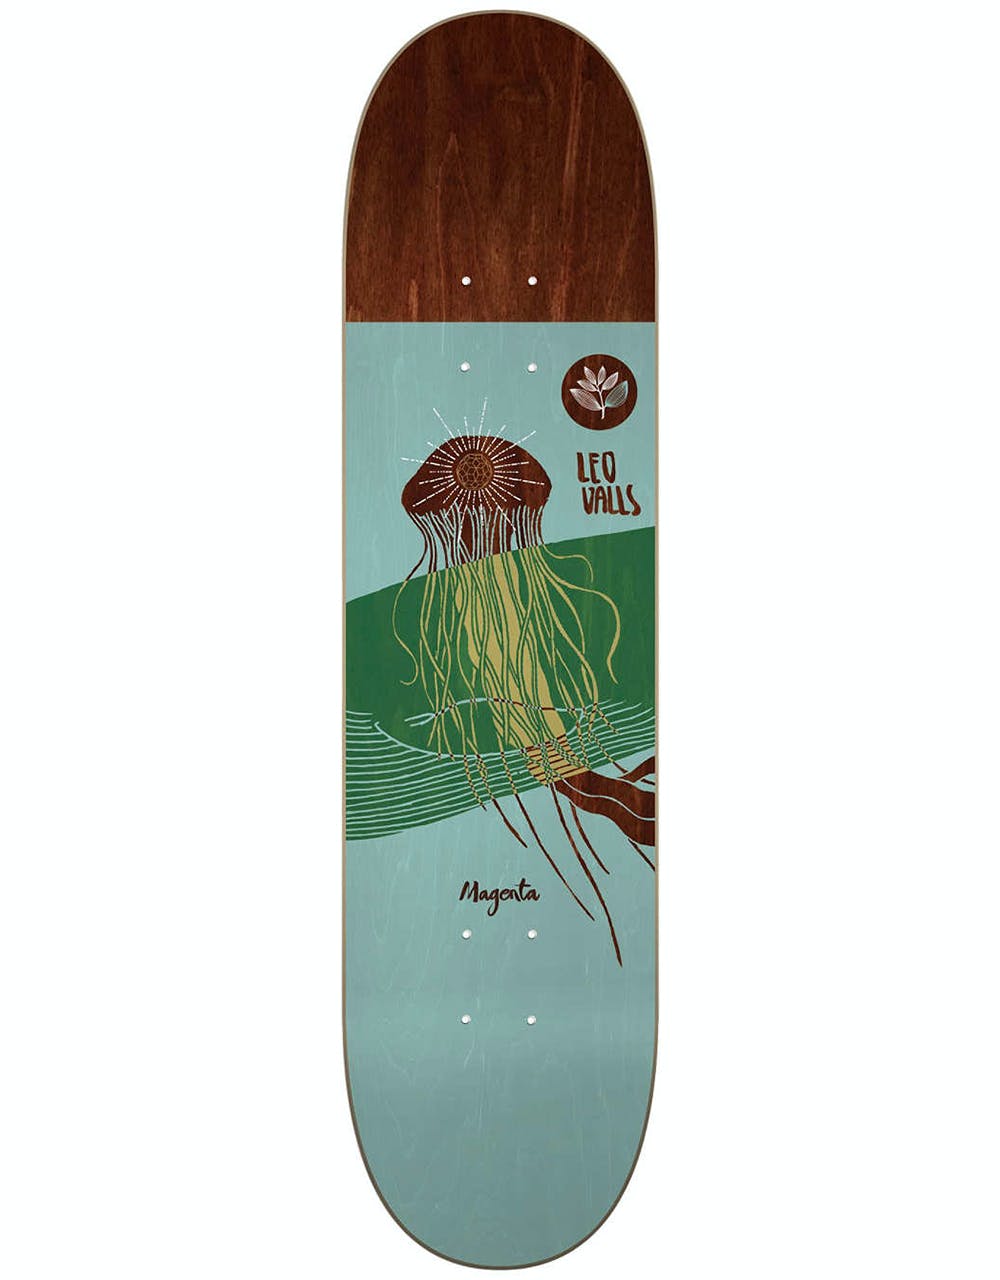 Magenta Valls Ocean Series Skateboard Deck - 8.25"